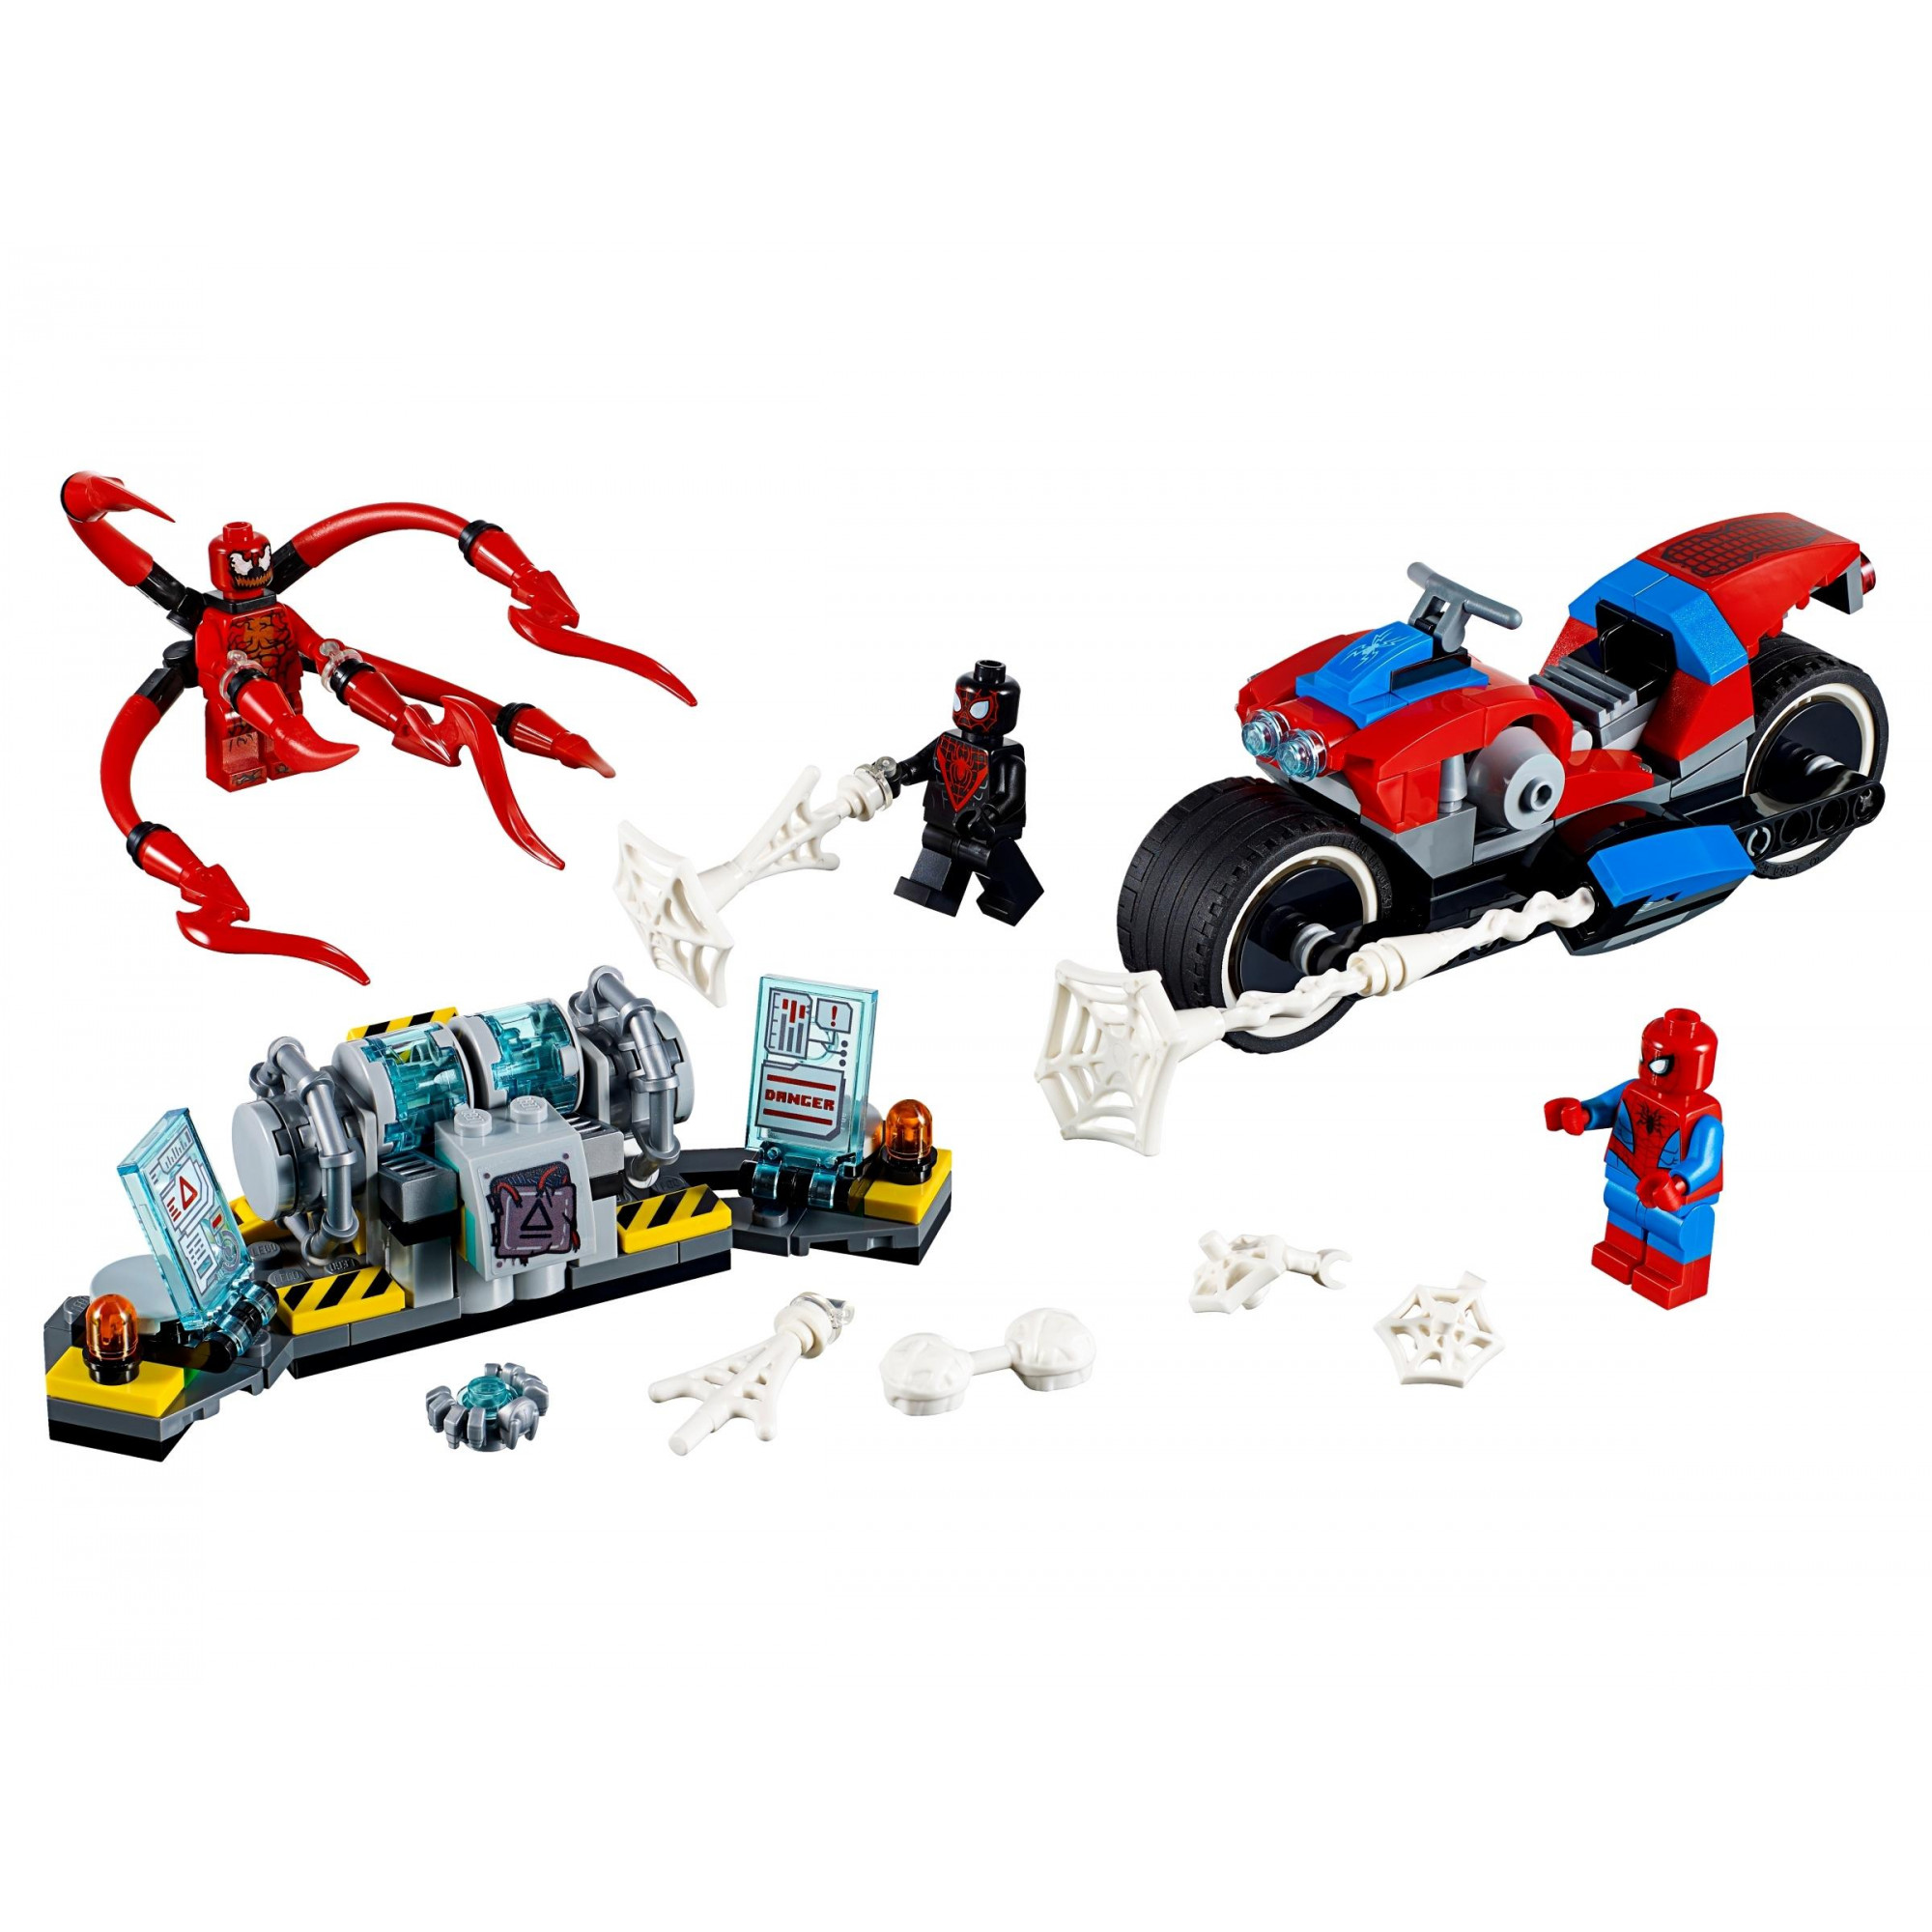 LEGO Super Heroes Спасение на мотоцикле с Человеком-пауком (76113) - зображення 1